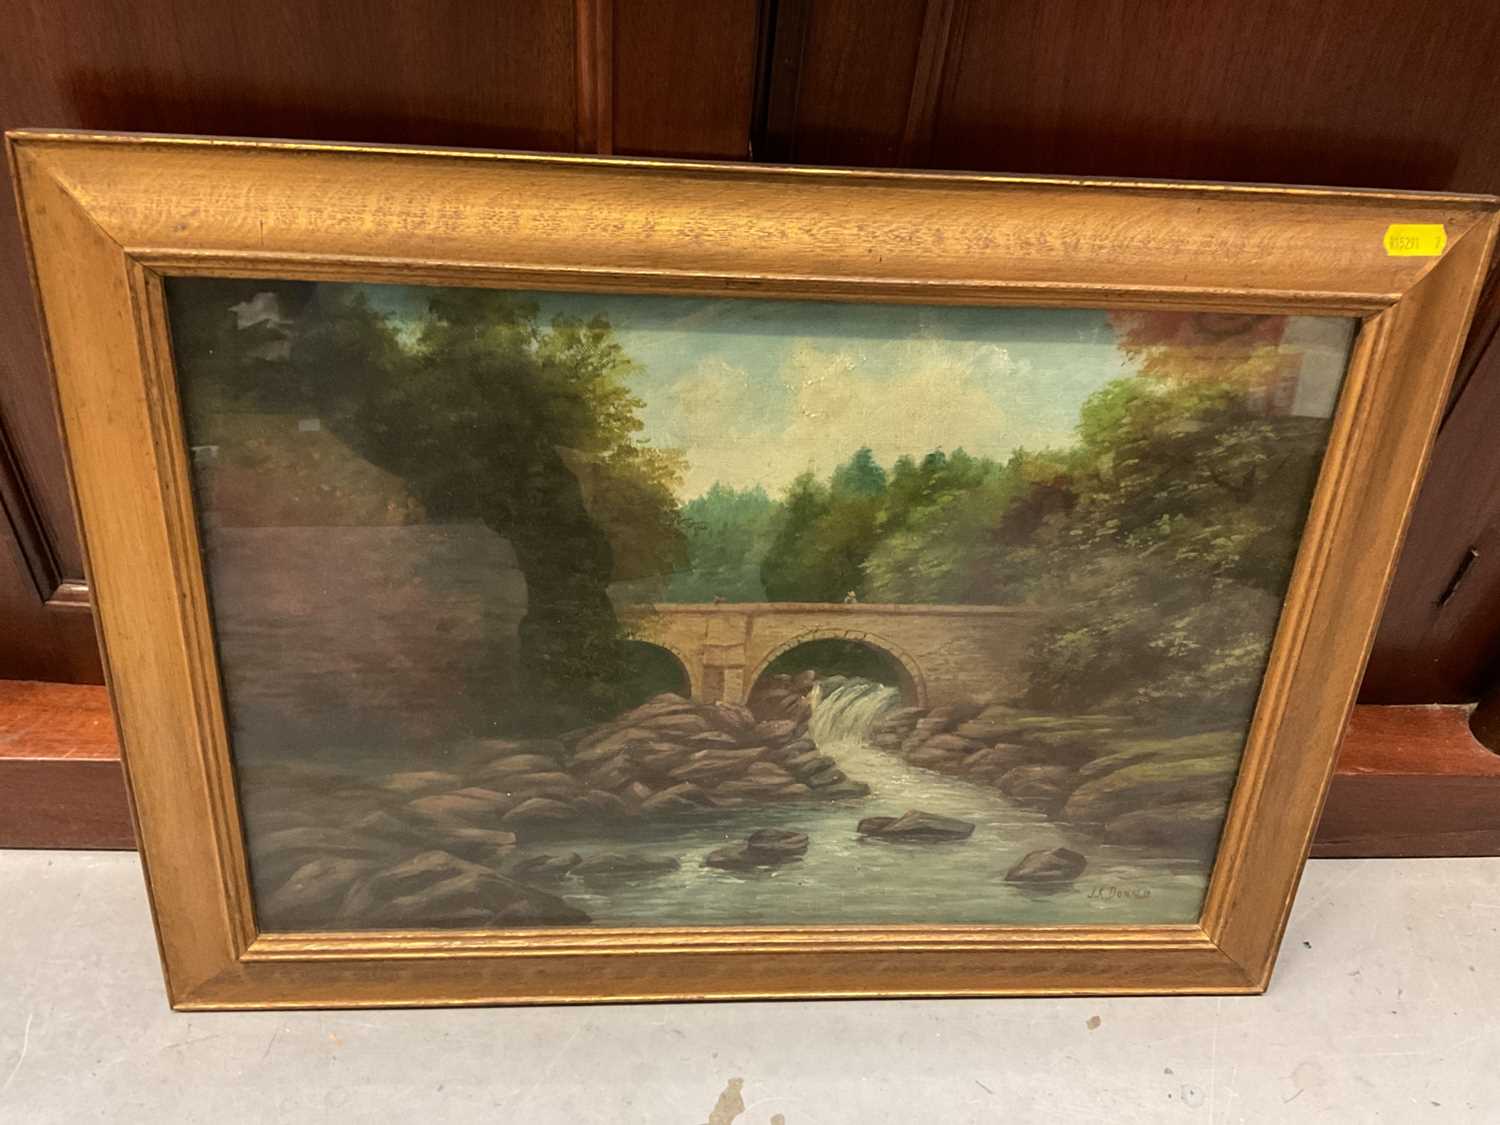 J. K. Donald, Edwardian oil on canvas - Bridge over a River, signed, in glazed gilt frame